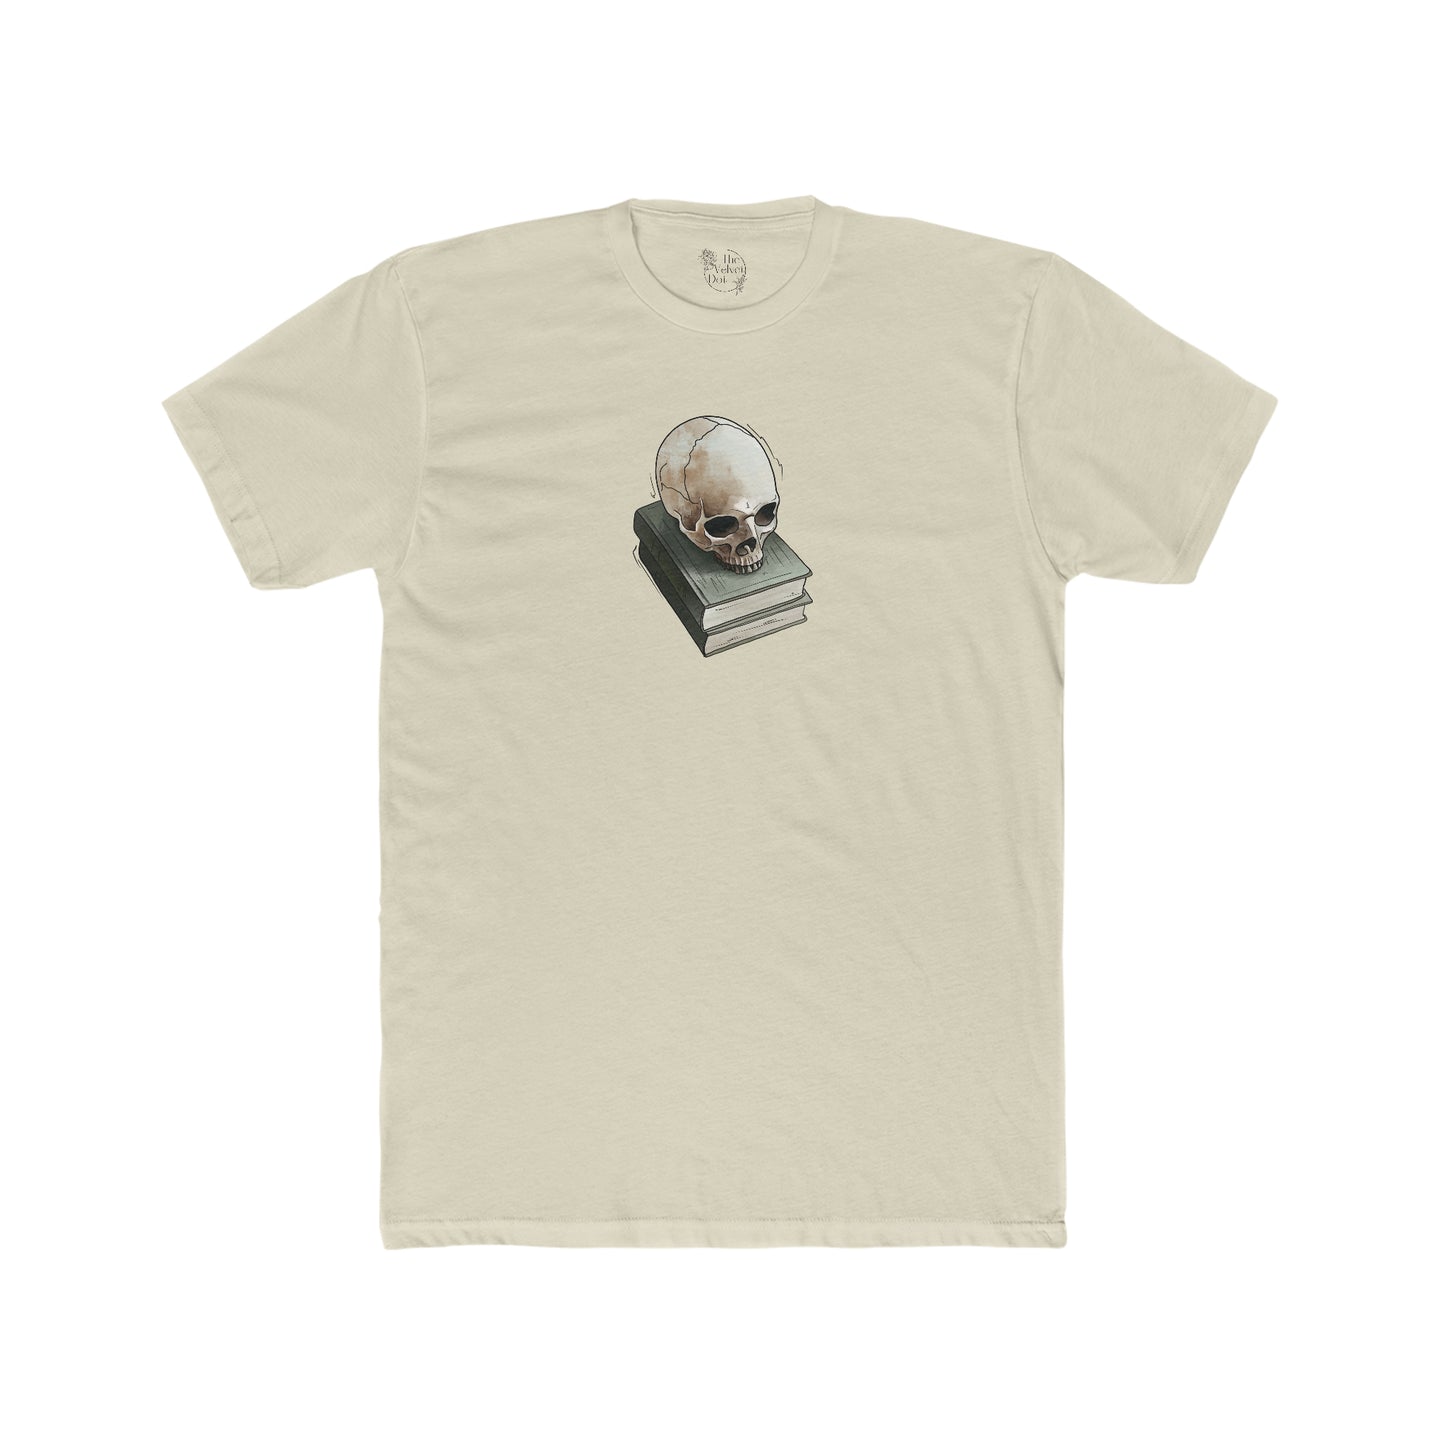 Skull & Books - Men's T-Shirt